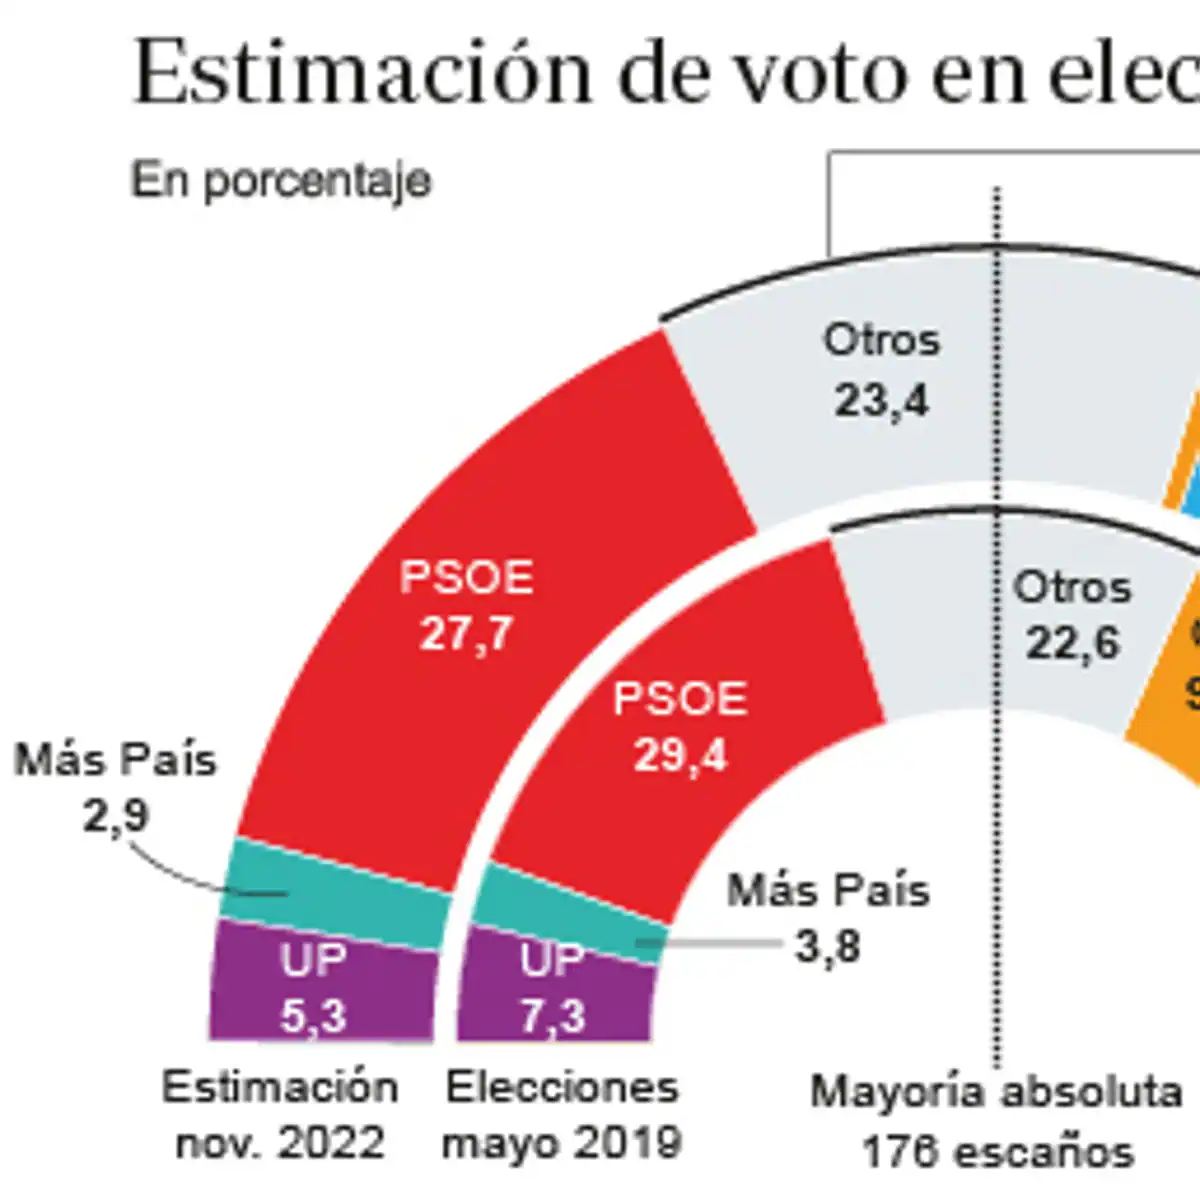 El PP ganaría las elecciones municipales por cinco puntos al PSOE